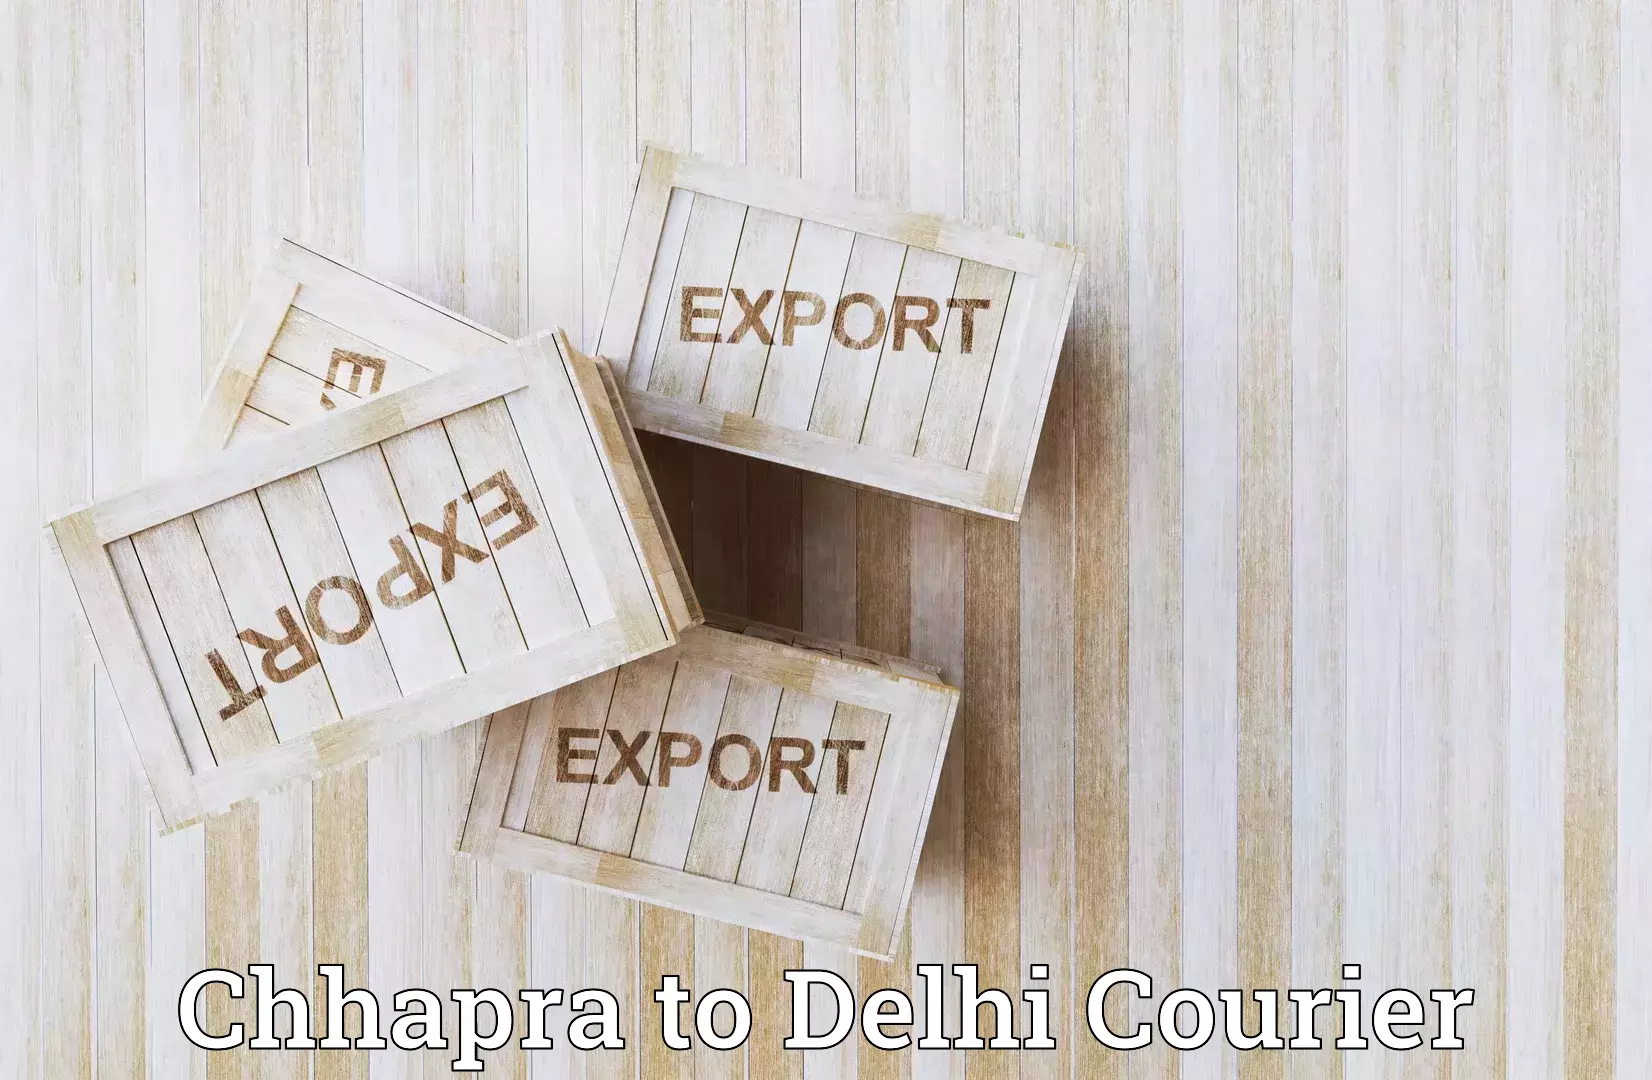 Next-day freight services Chhapra to Delhi